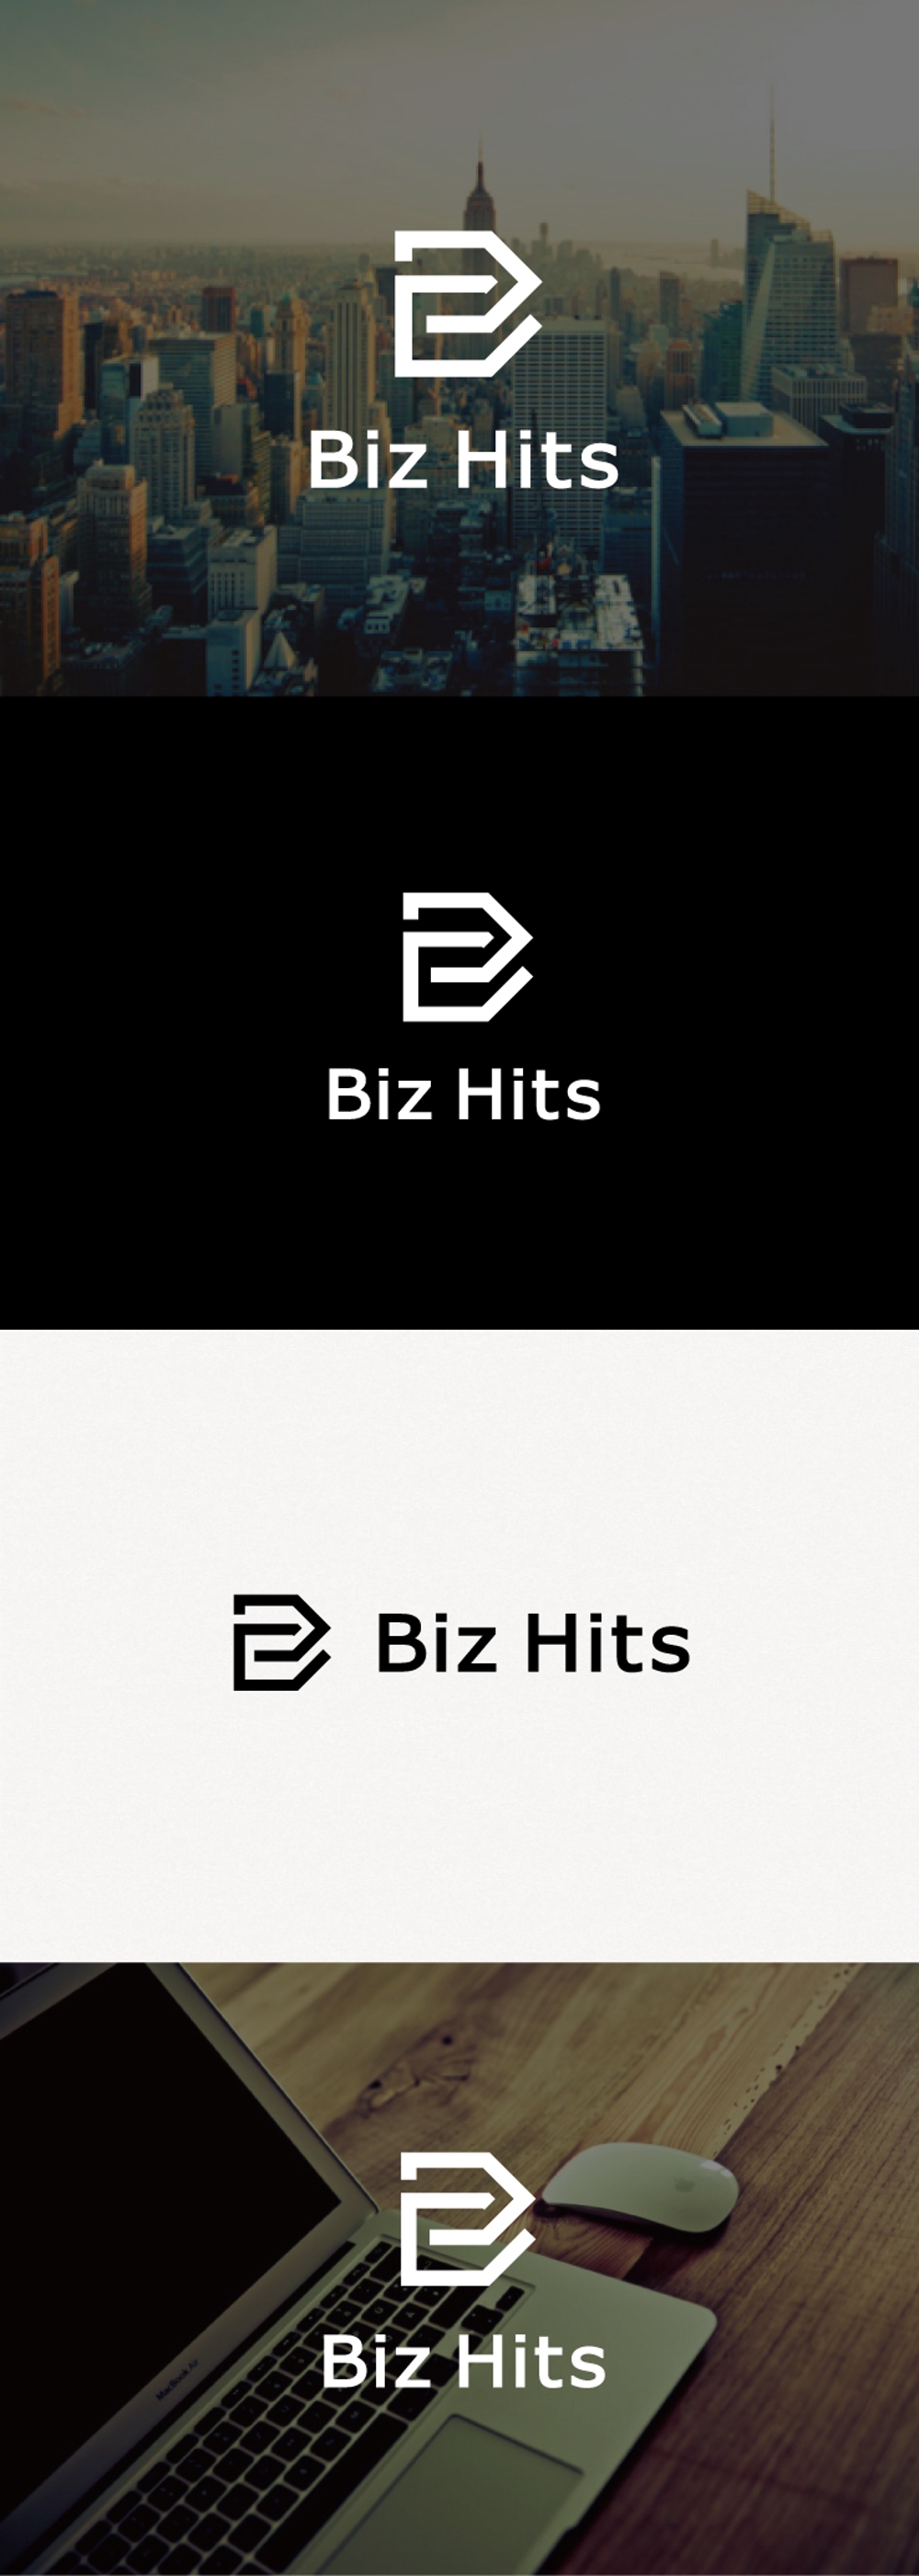 ビジネス系情報サイトへ使用するタイトルロゴデザインを募集しています